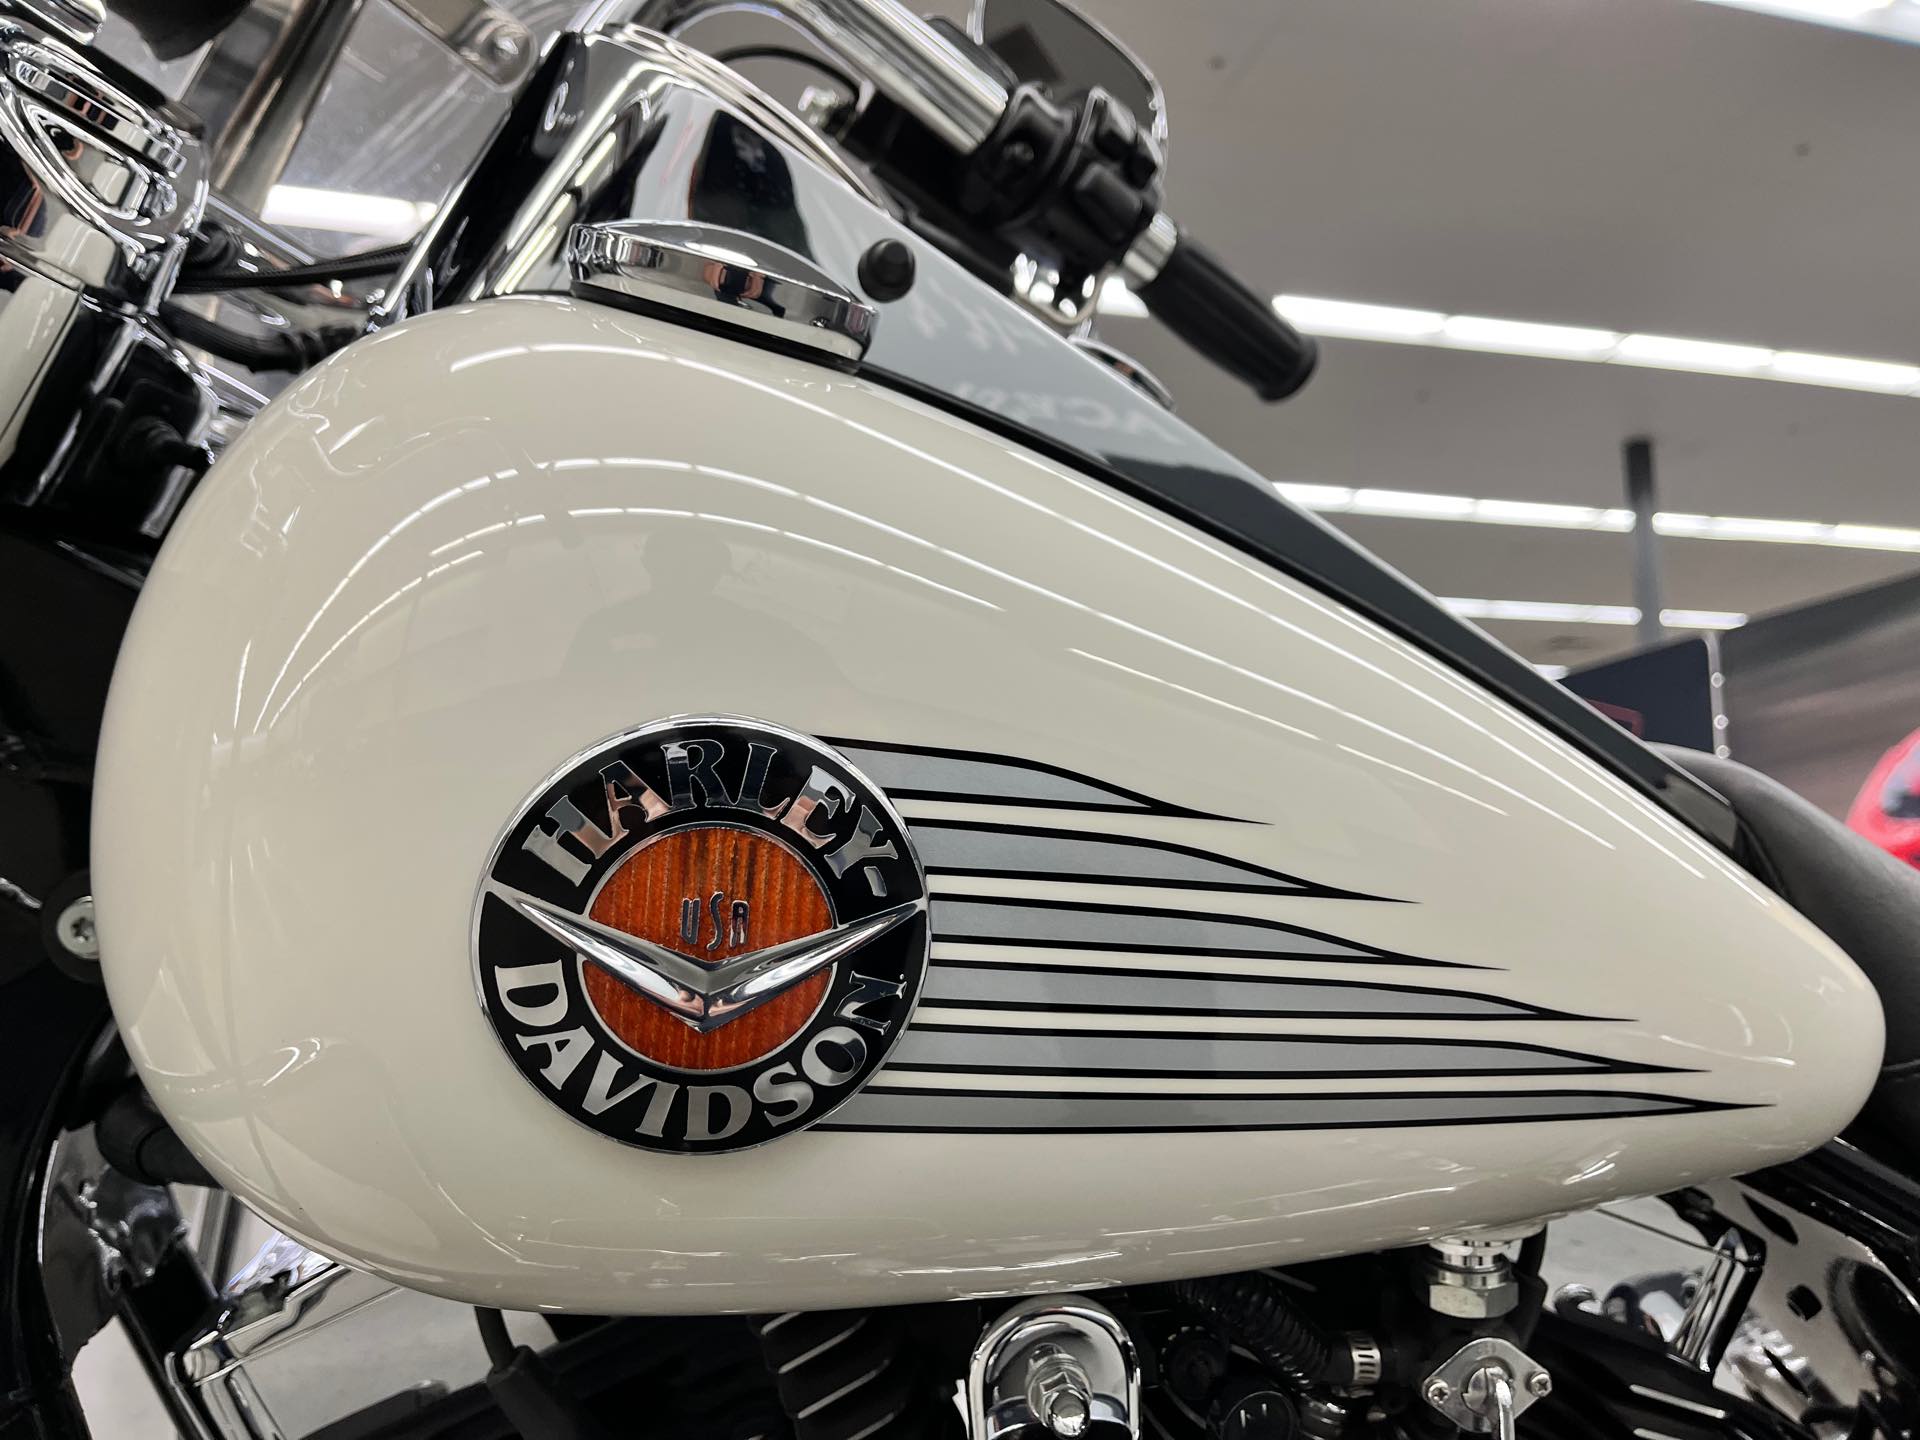 2001 Harley-Davidson FLHR at Aces Motorcycles - Denver